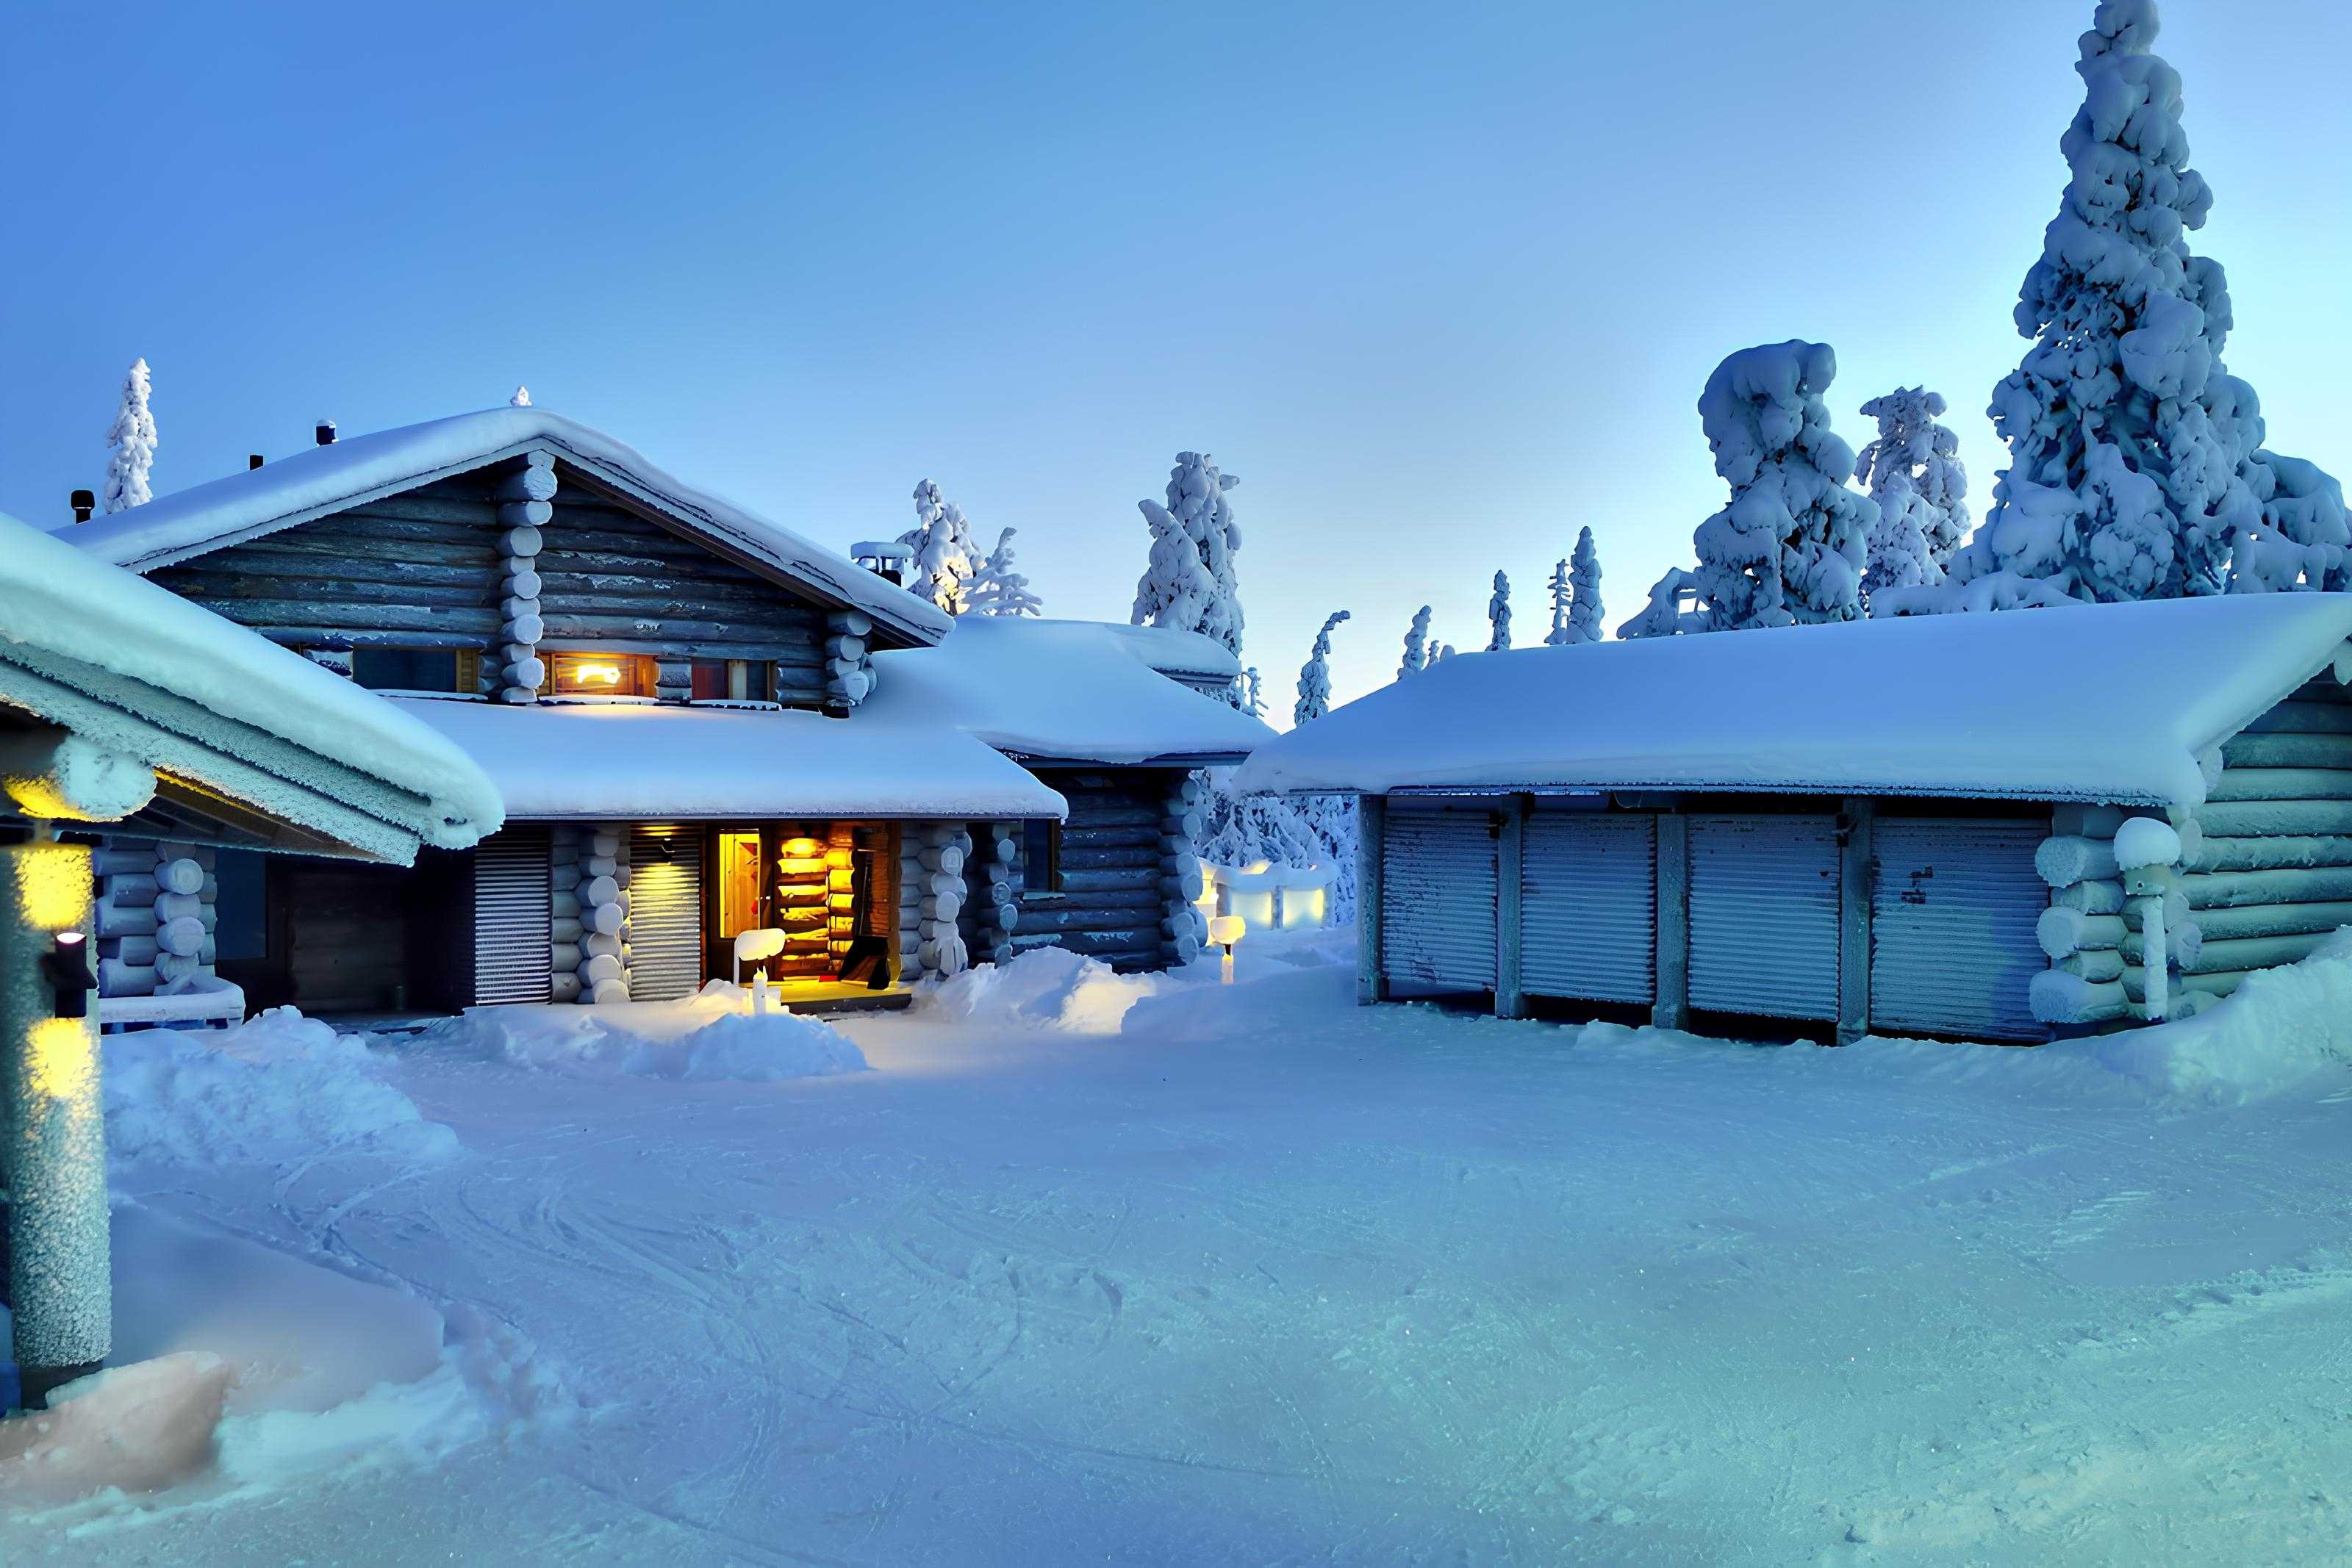 Ruka, Finland at noon in December. Polar night